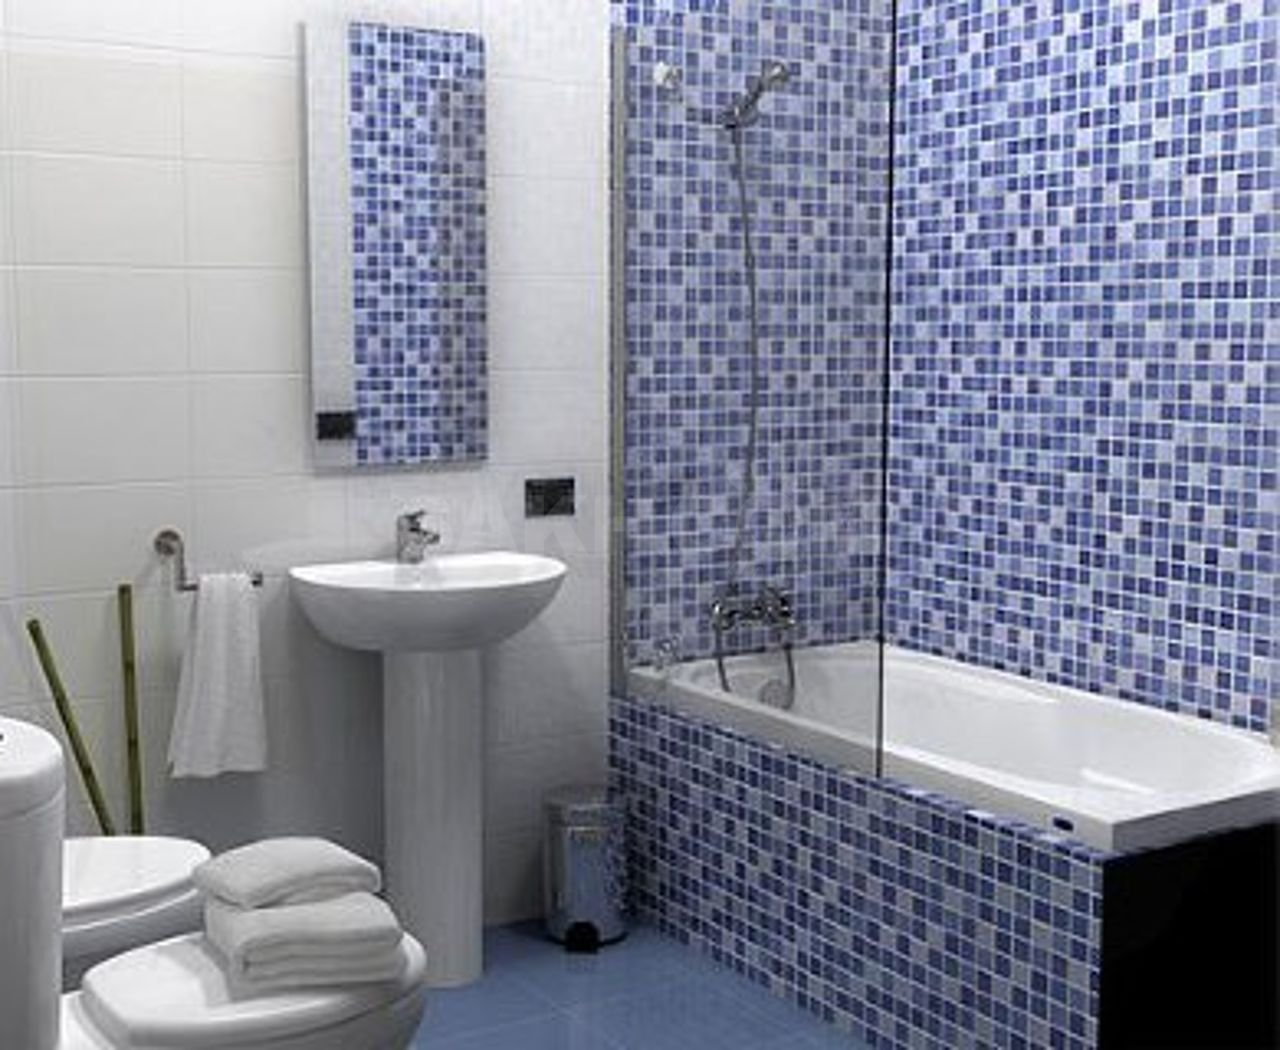 Купить мозаику для ванной plitka mosaica ru. Плитка мозаика для ванной комнаты. Мозаичная плитка для ванной. Ванная отделанная мозаикой. Ванная отделанная плиткой.